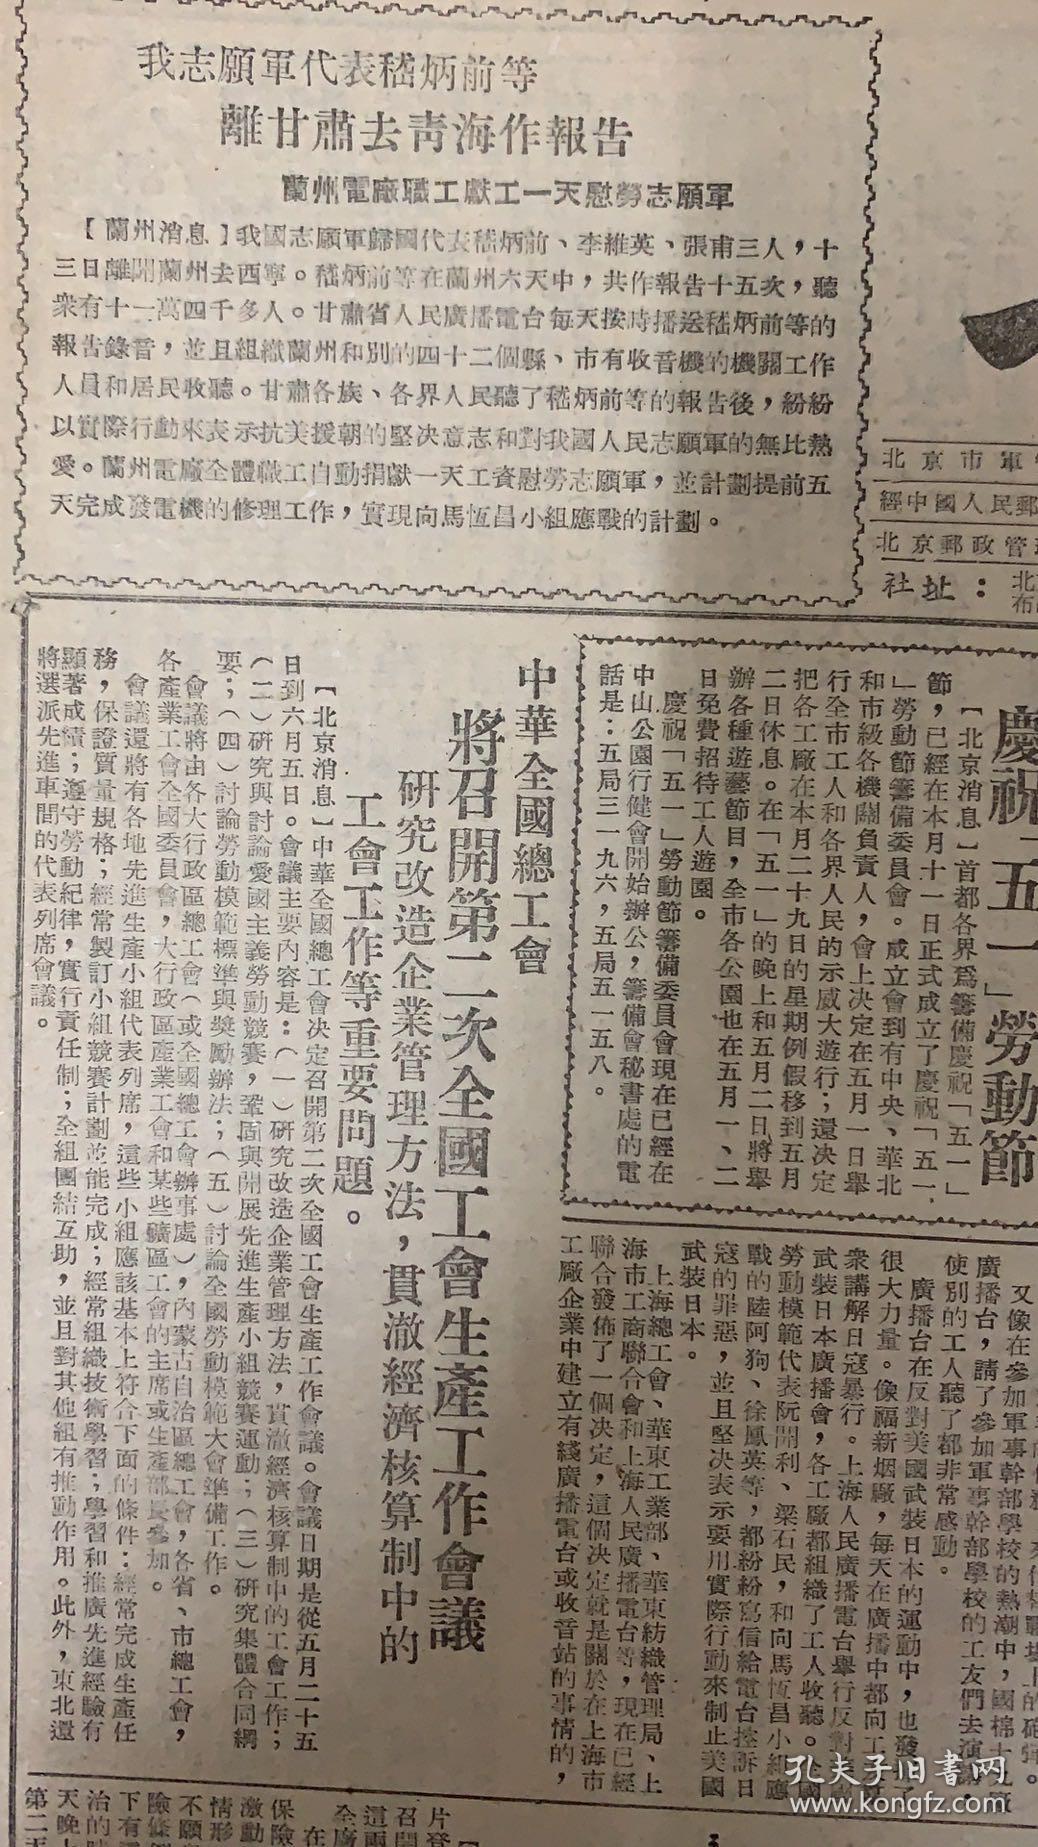 工人日报
1951年4月18日 
1*我志愿军代表：嵇炳前等离甘肃去前台作报告。
2*中华全国总工会将召开第二次全国工会生产工作会议。
20元